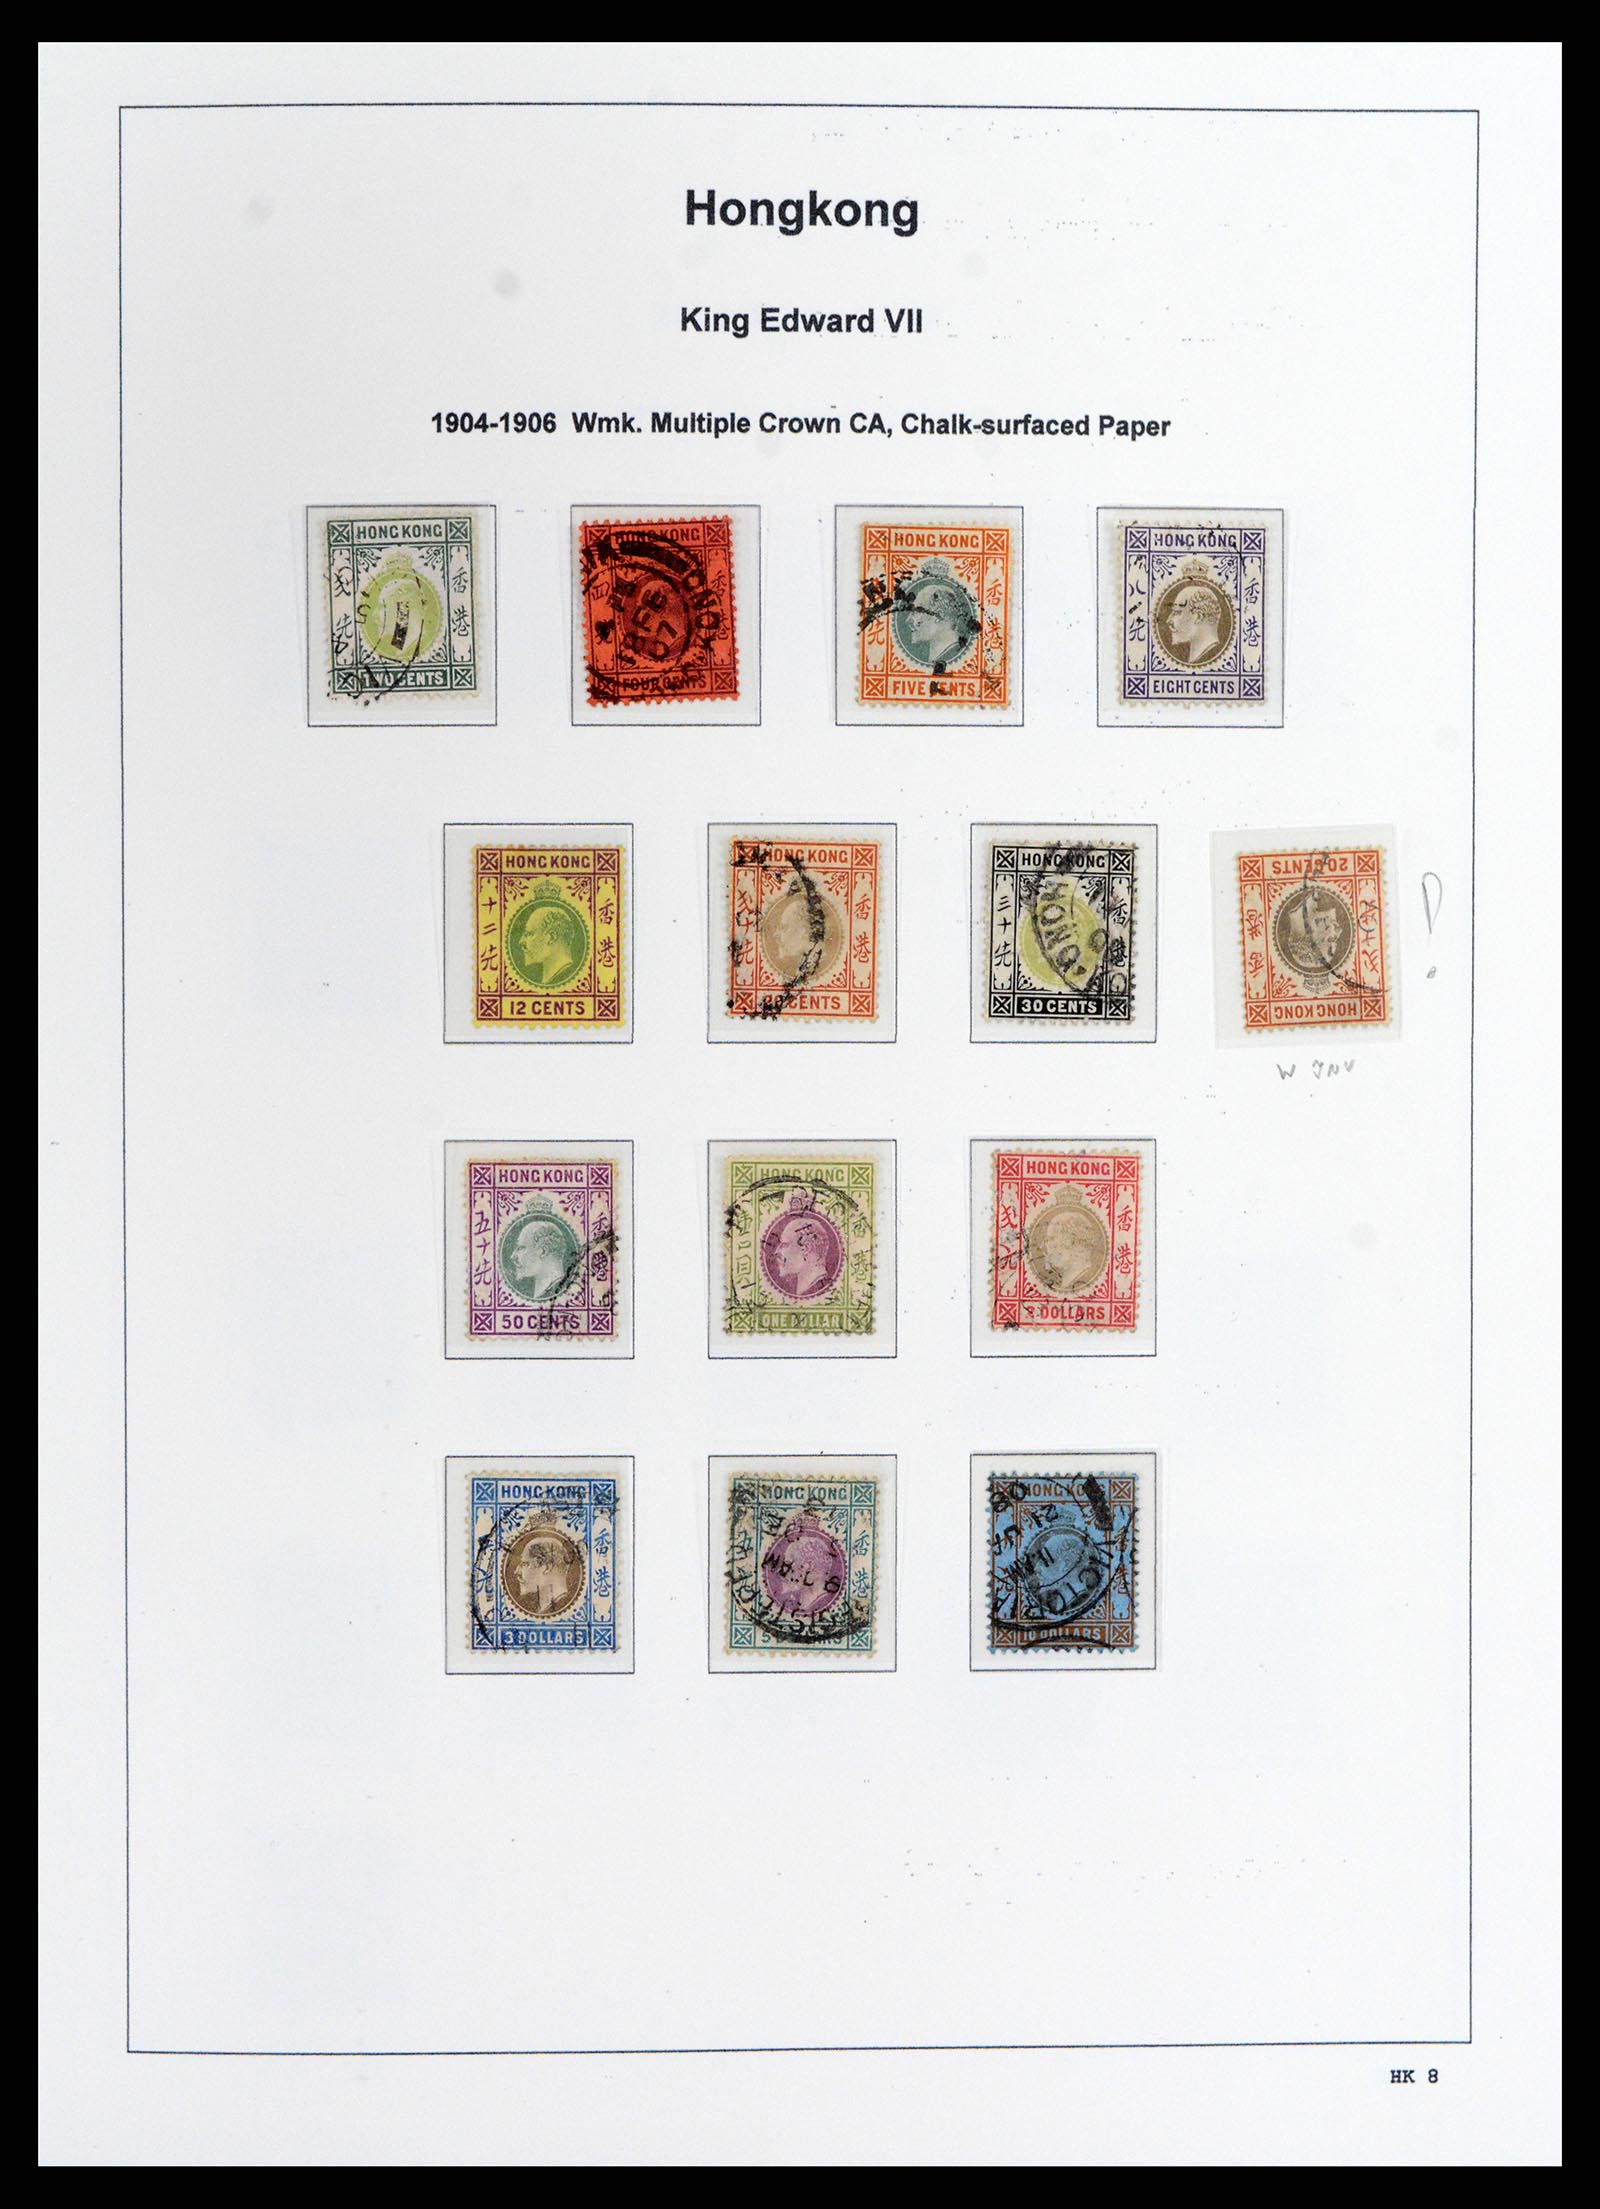 37795 008 - Stamp Collection 37795 Hong Kong 1862-1984.